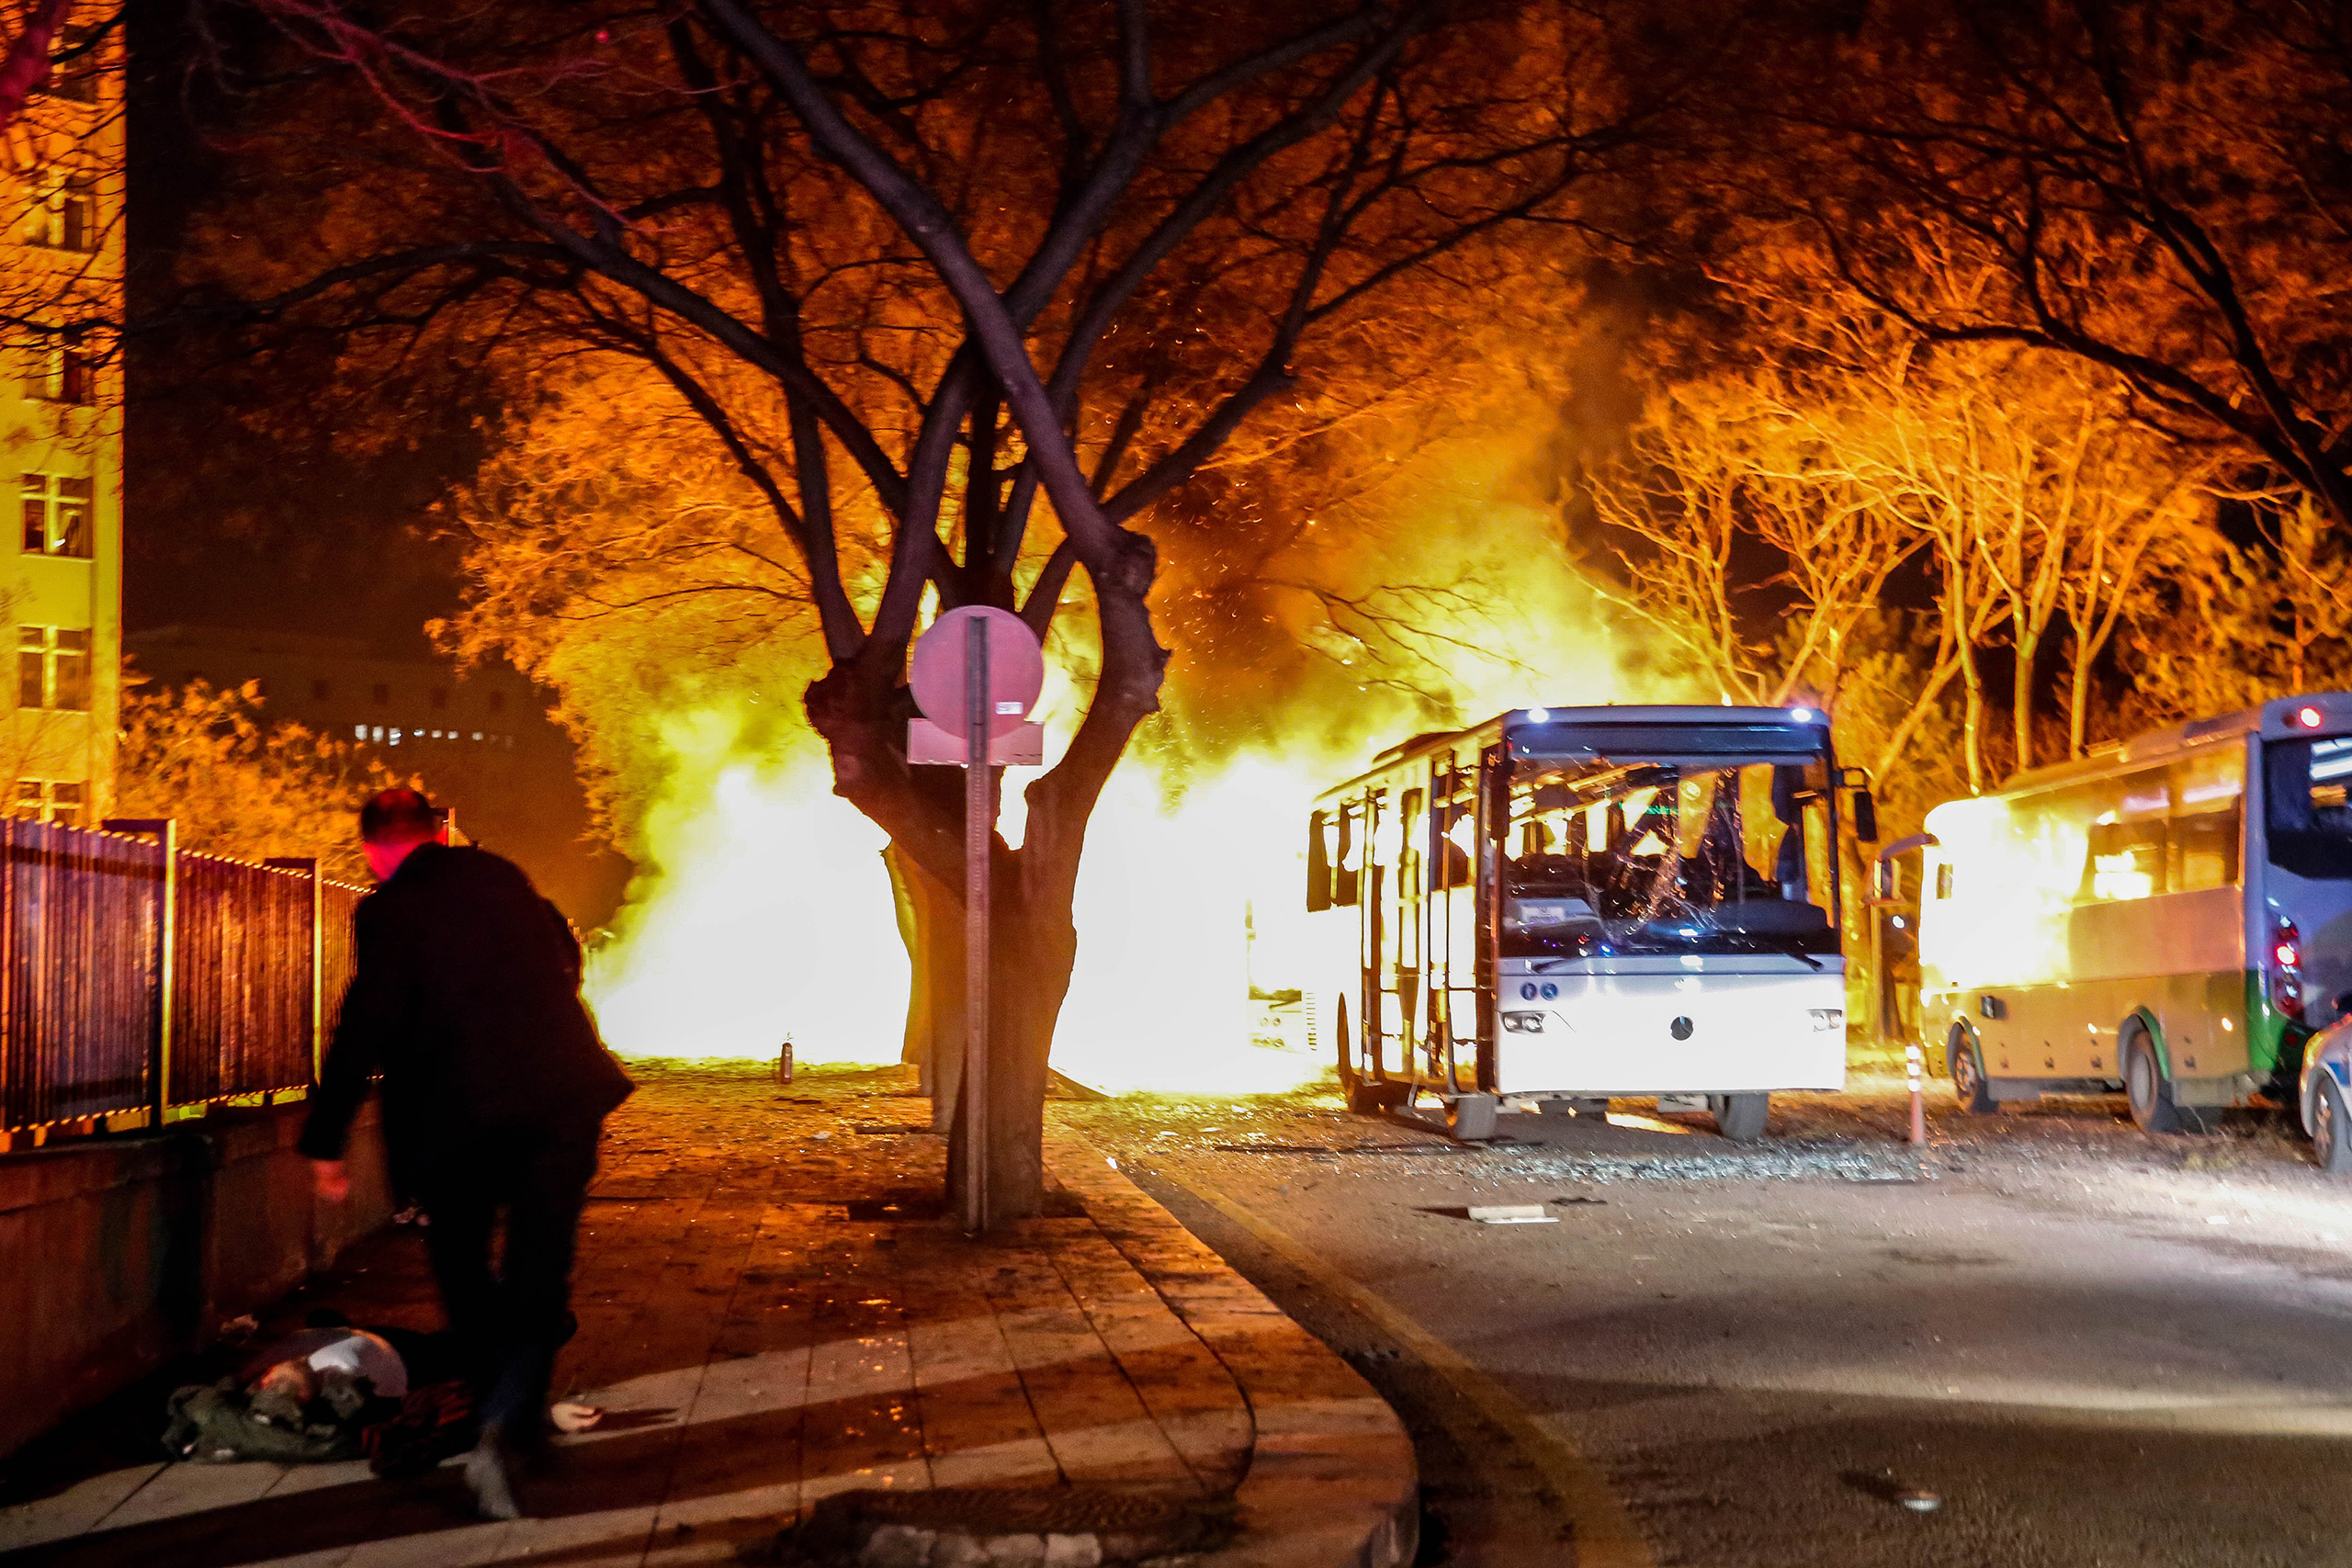 Army service buses burn after an explosion in Ankara, Turkey, Feb. 17, 2016. (Defne Karadeniz—Getty Images)